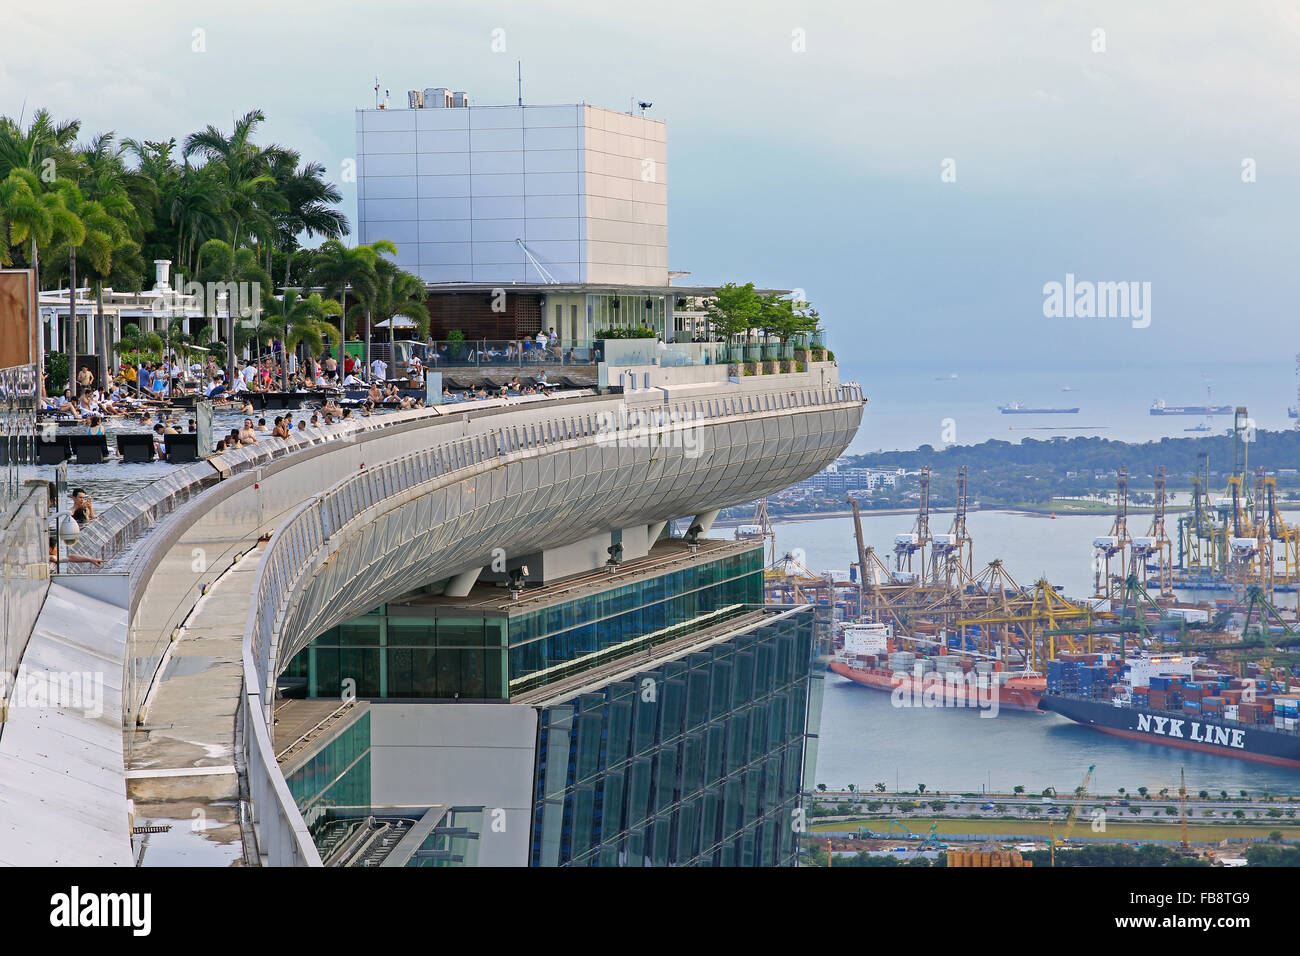 Vue depuis la piscine à débordement du Marina Bay Sands Hotel. Singapour Banque D'Images